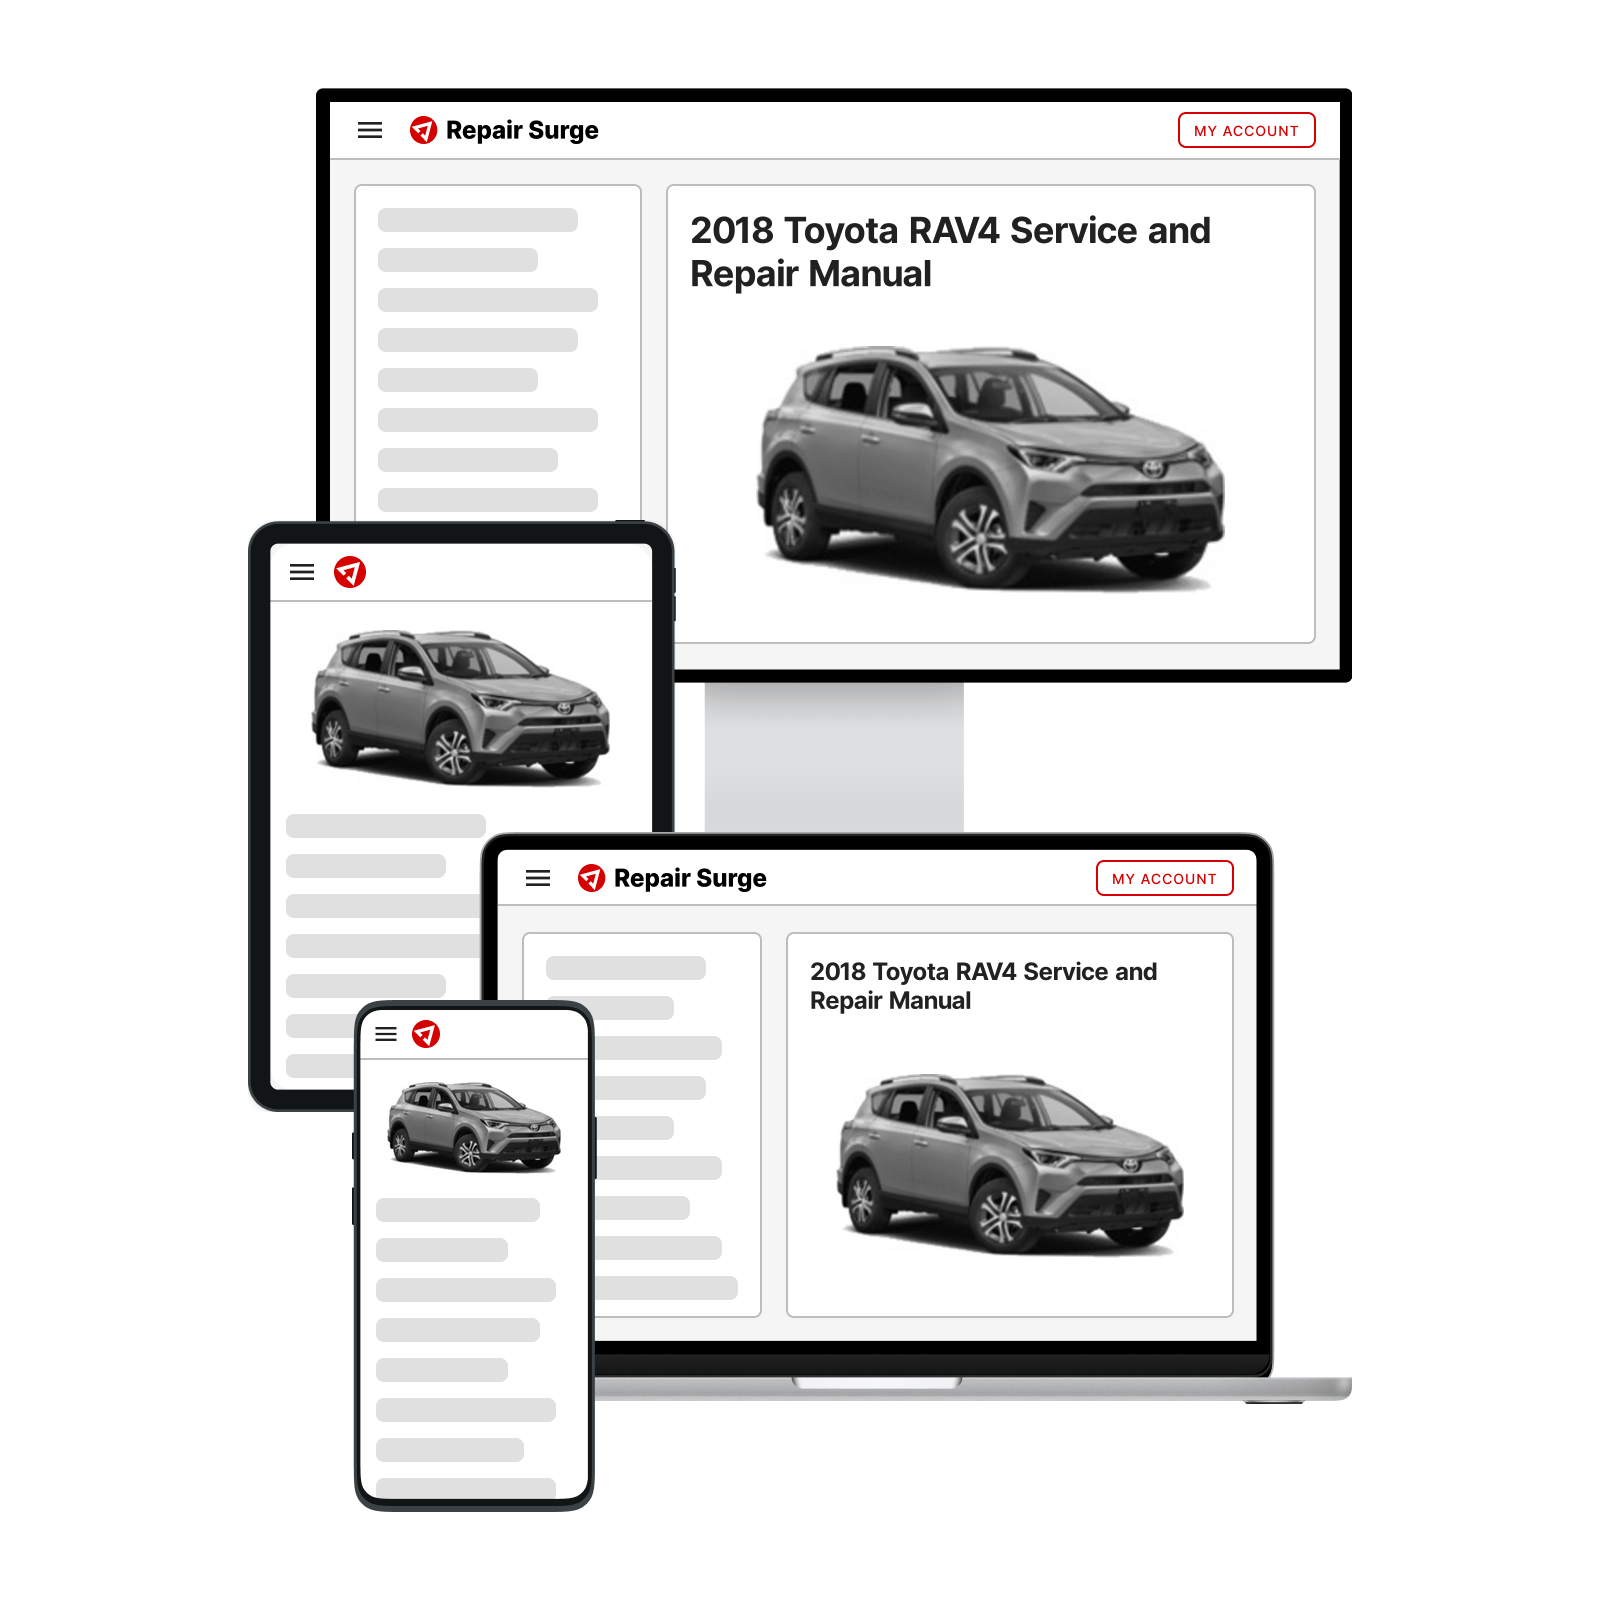 2018 Toyota RAV4 service and repair manual hero image